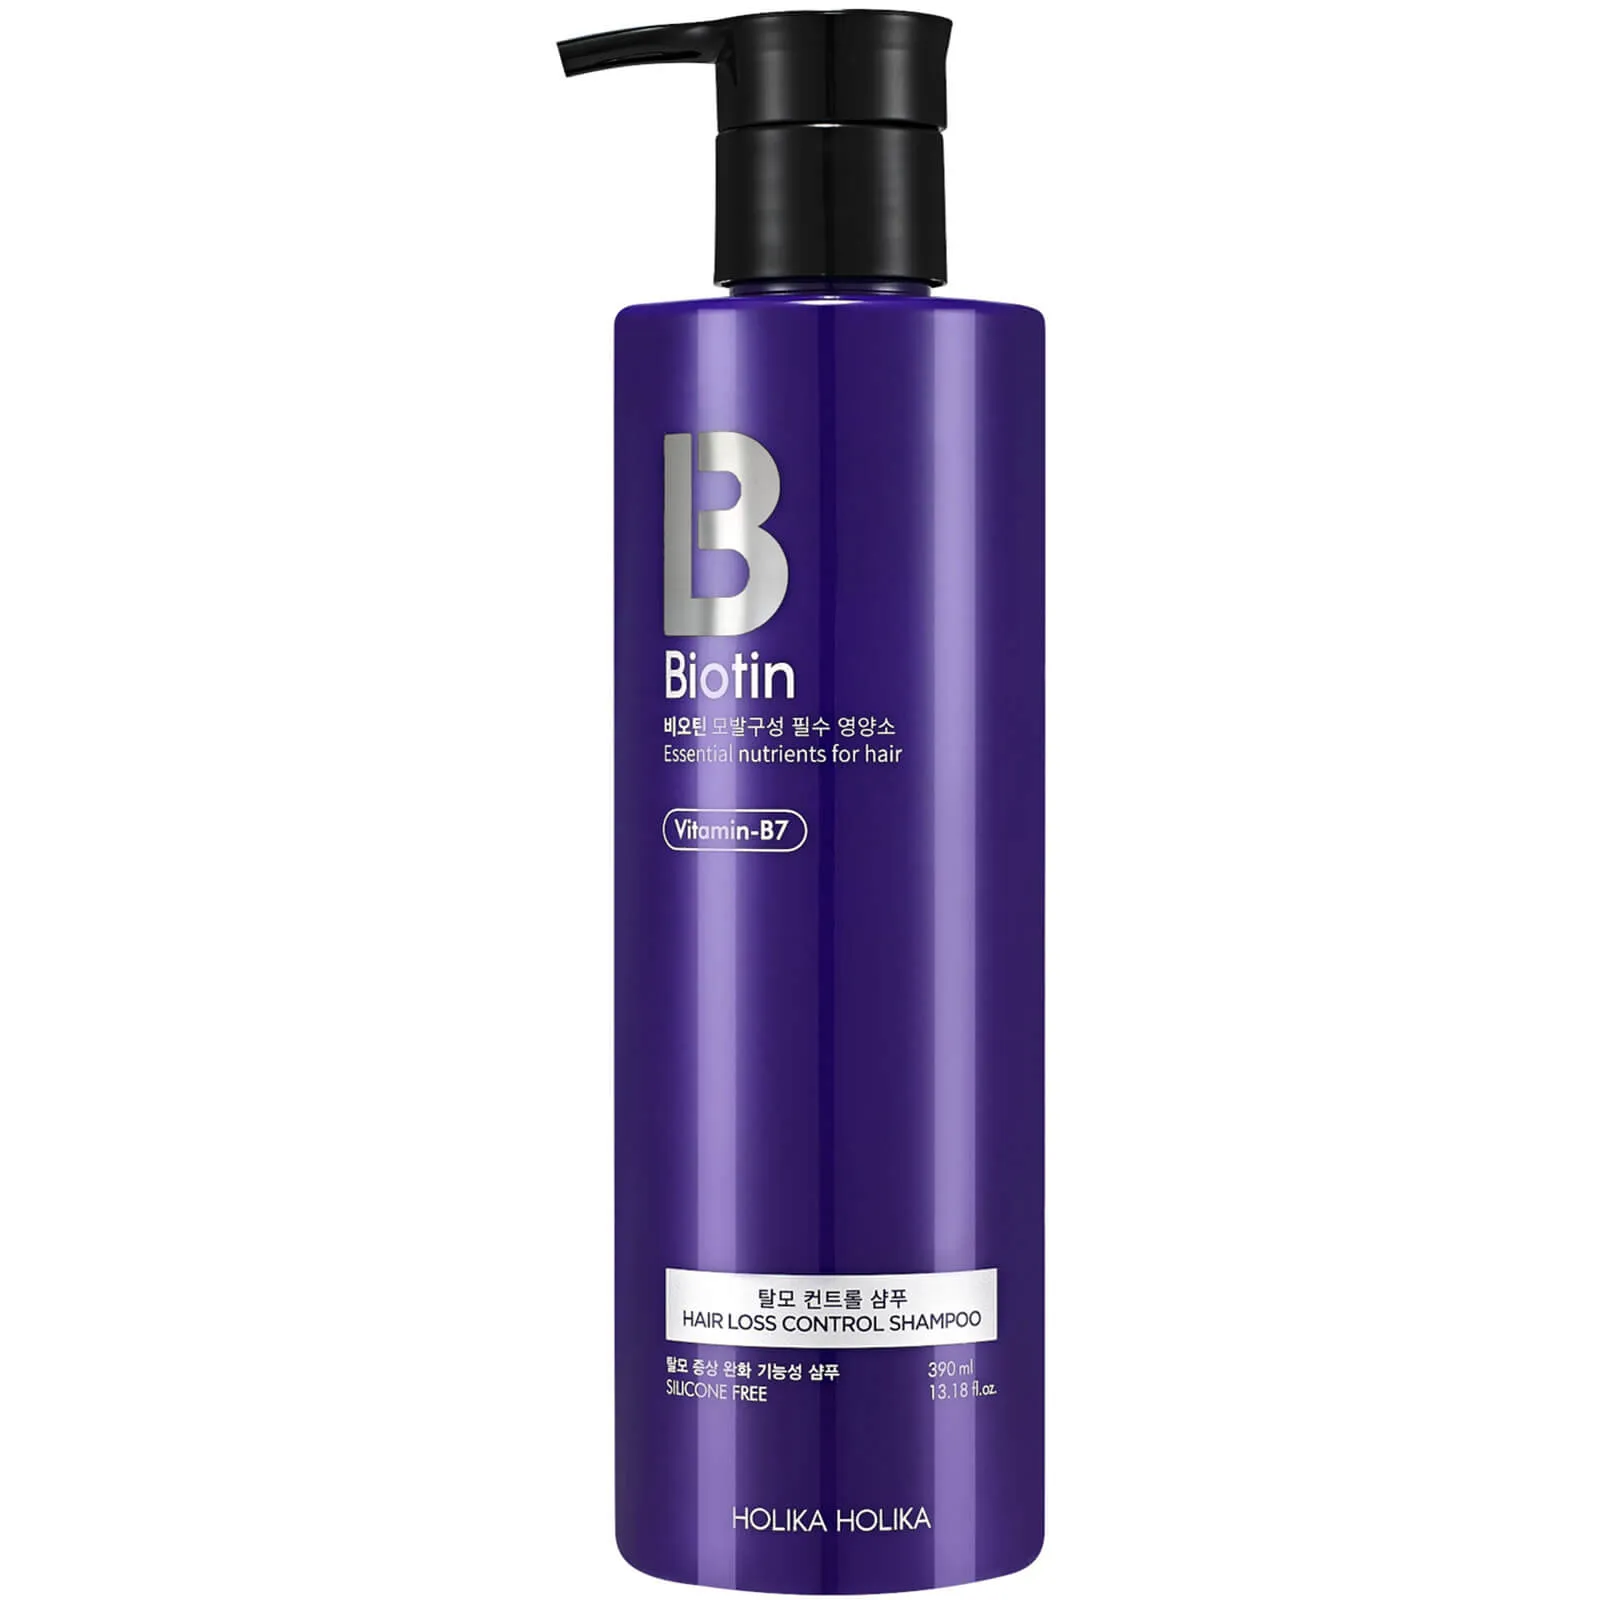  Biotin Hair Loss Control Shampoo 390ml